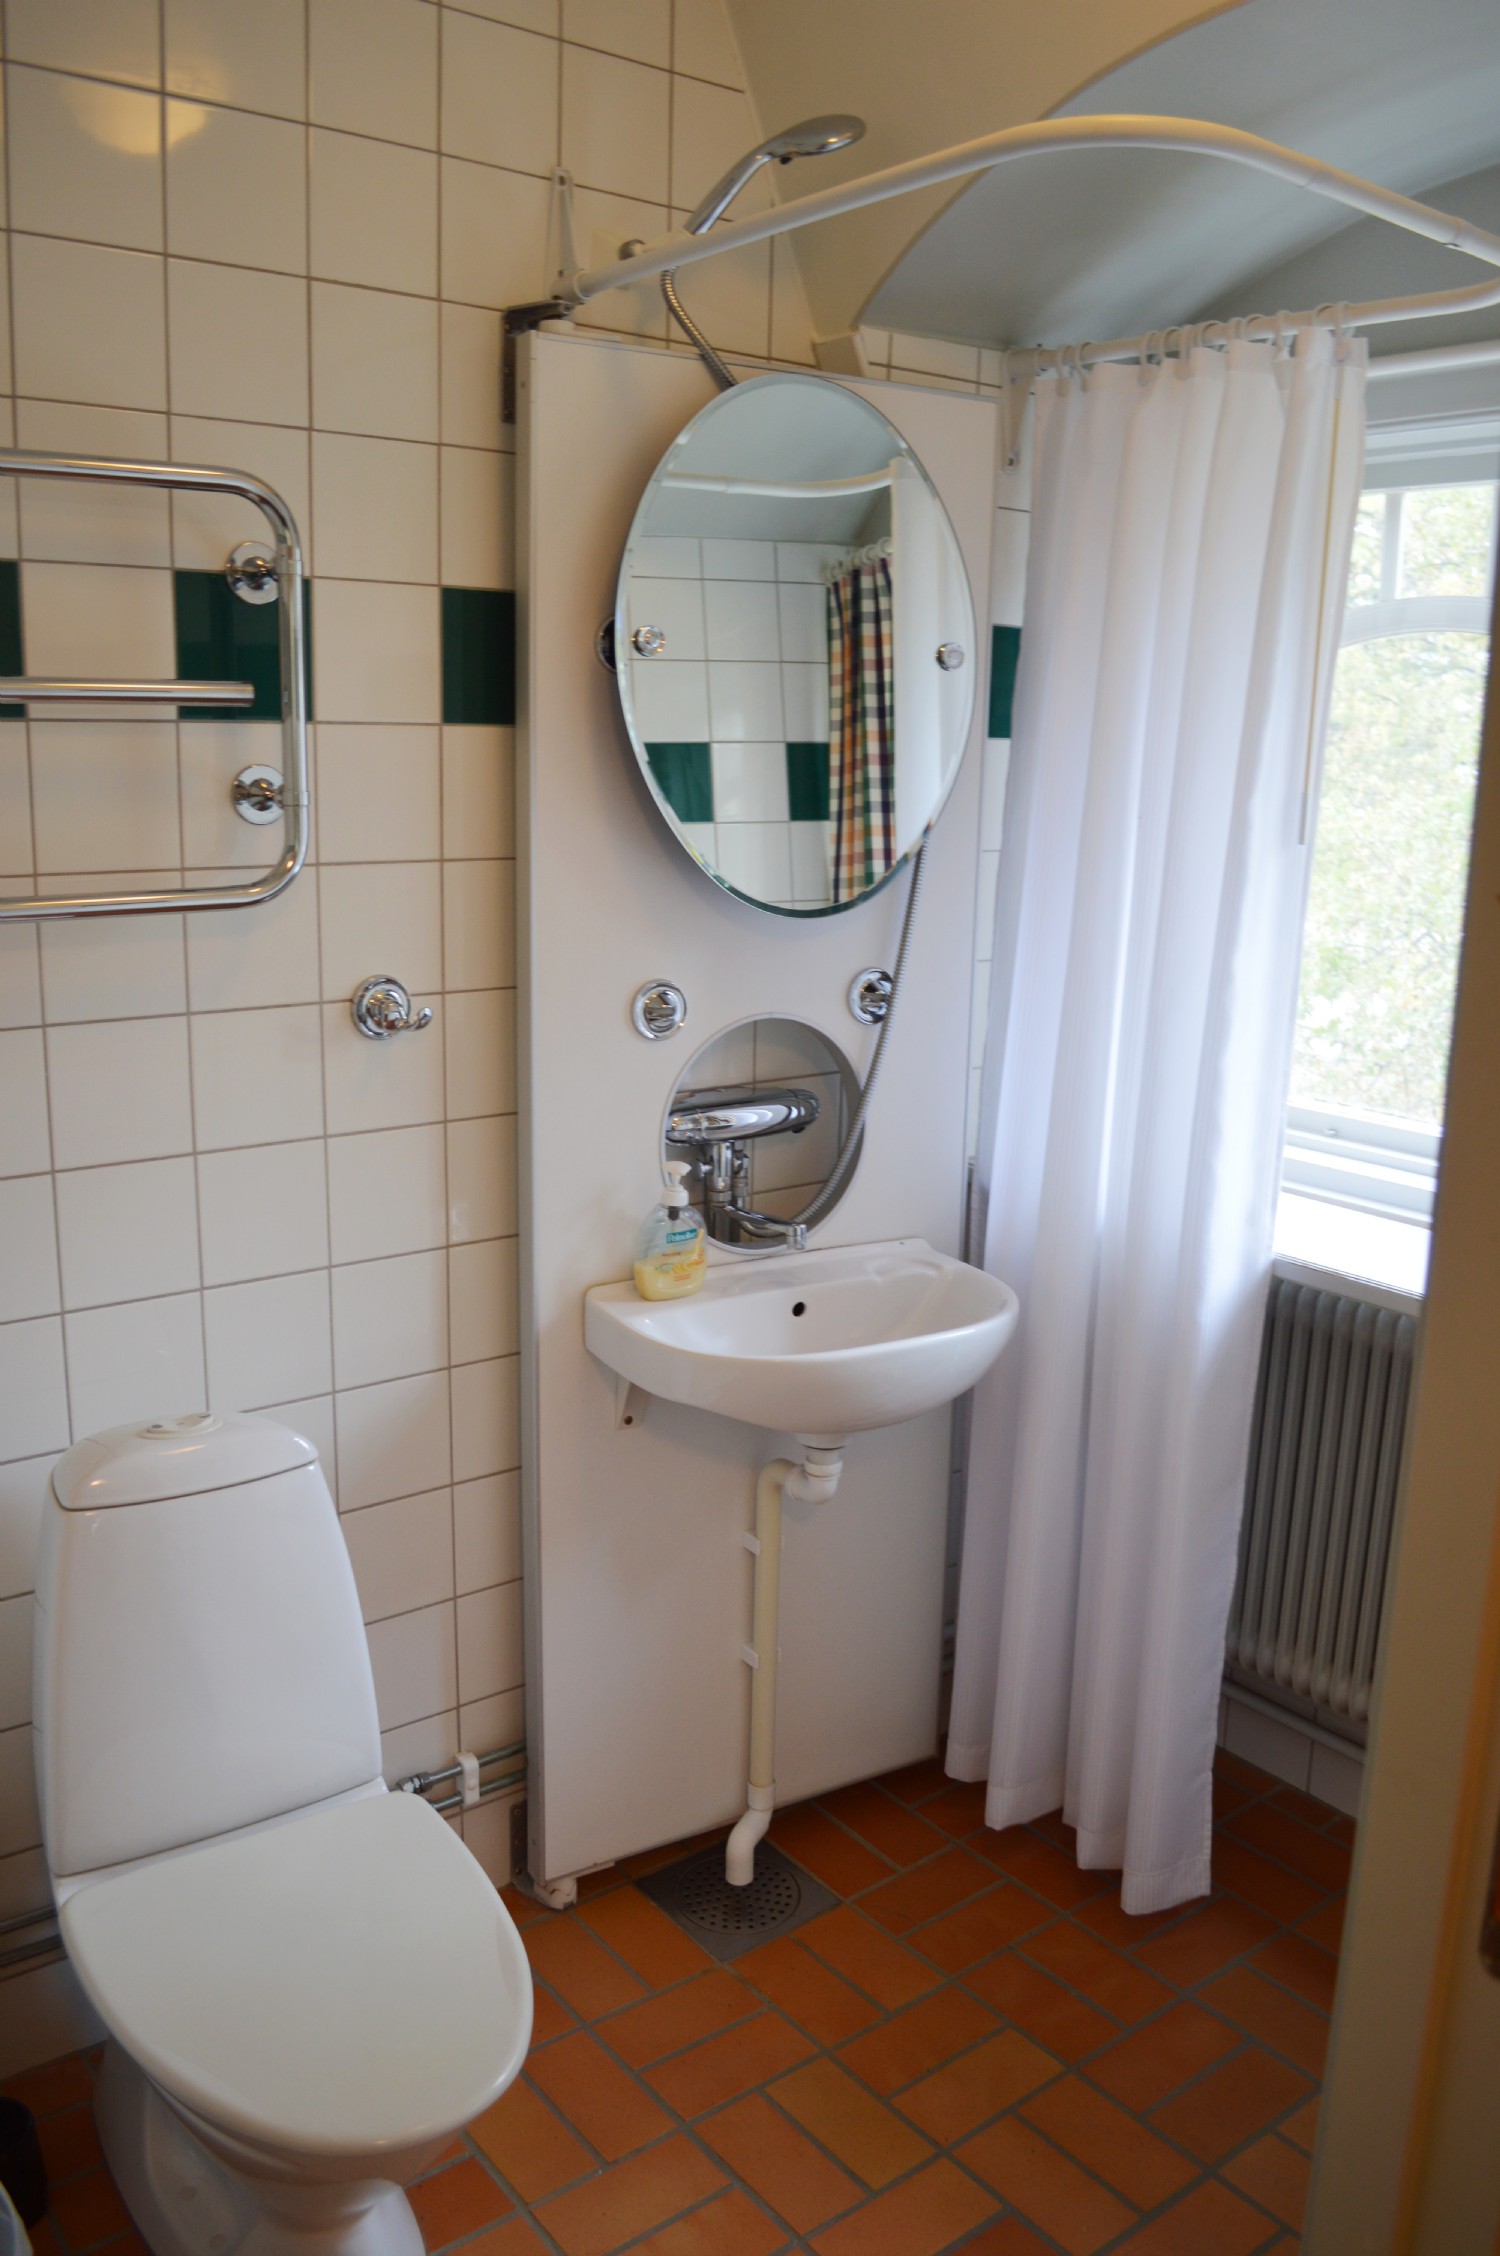 Tillhrande badrum/ Conecting bath room 